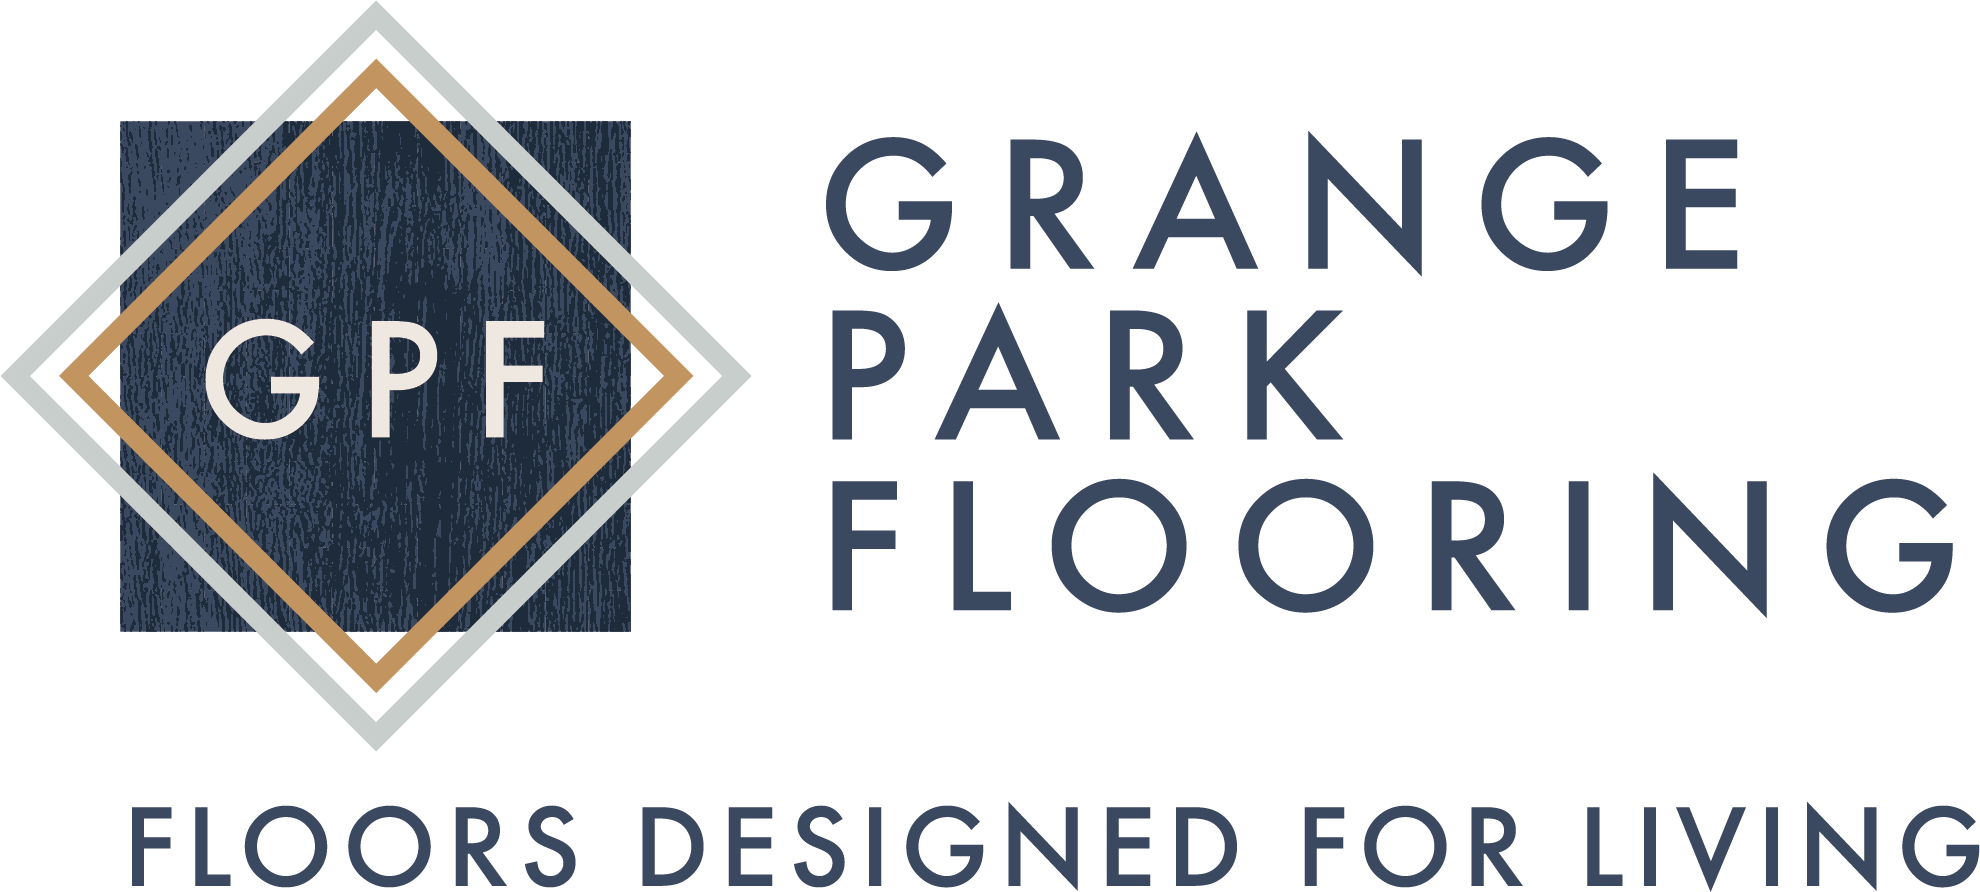 Grange Park Flooring Logo with Strapline 'Floors Designed For Living'